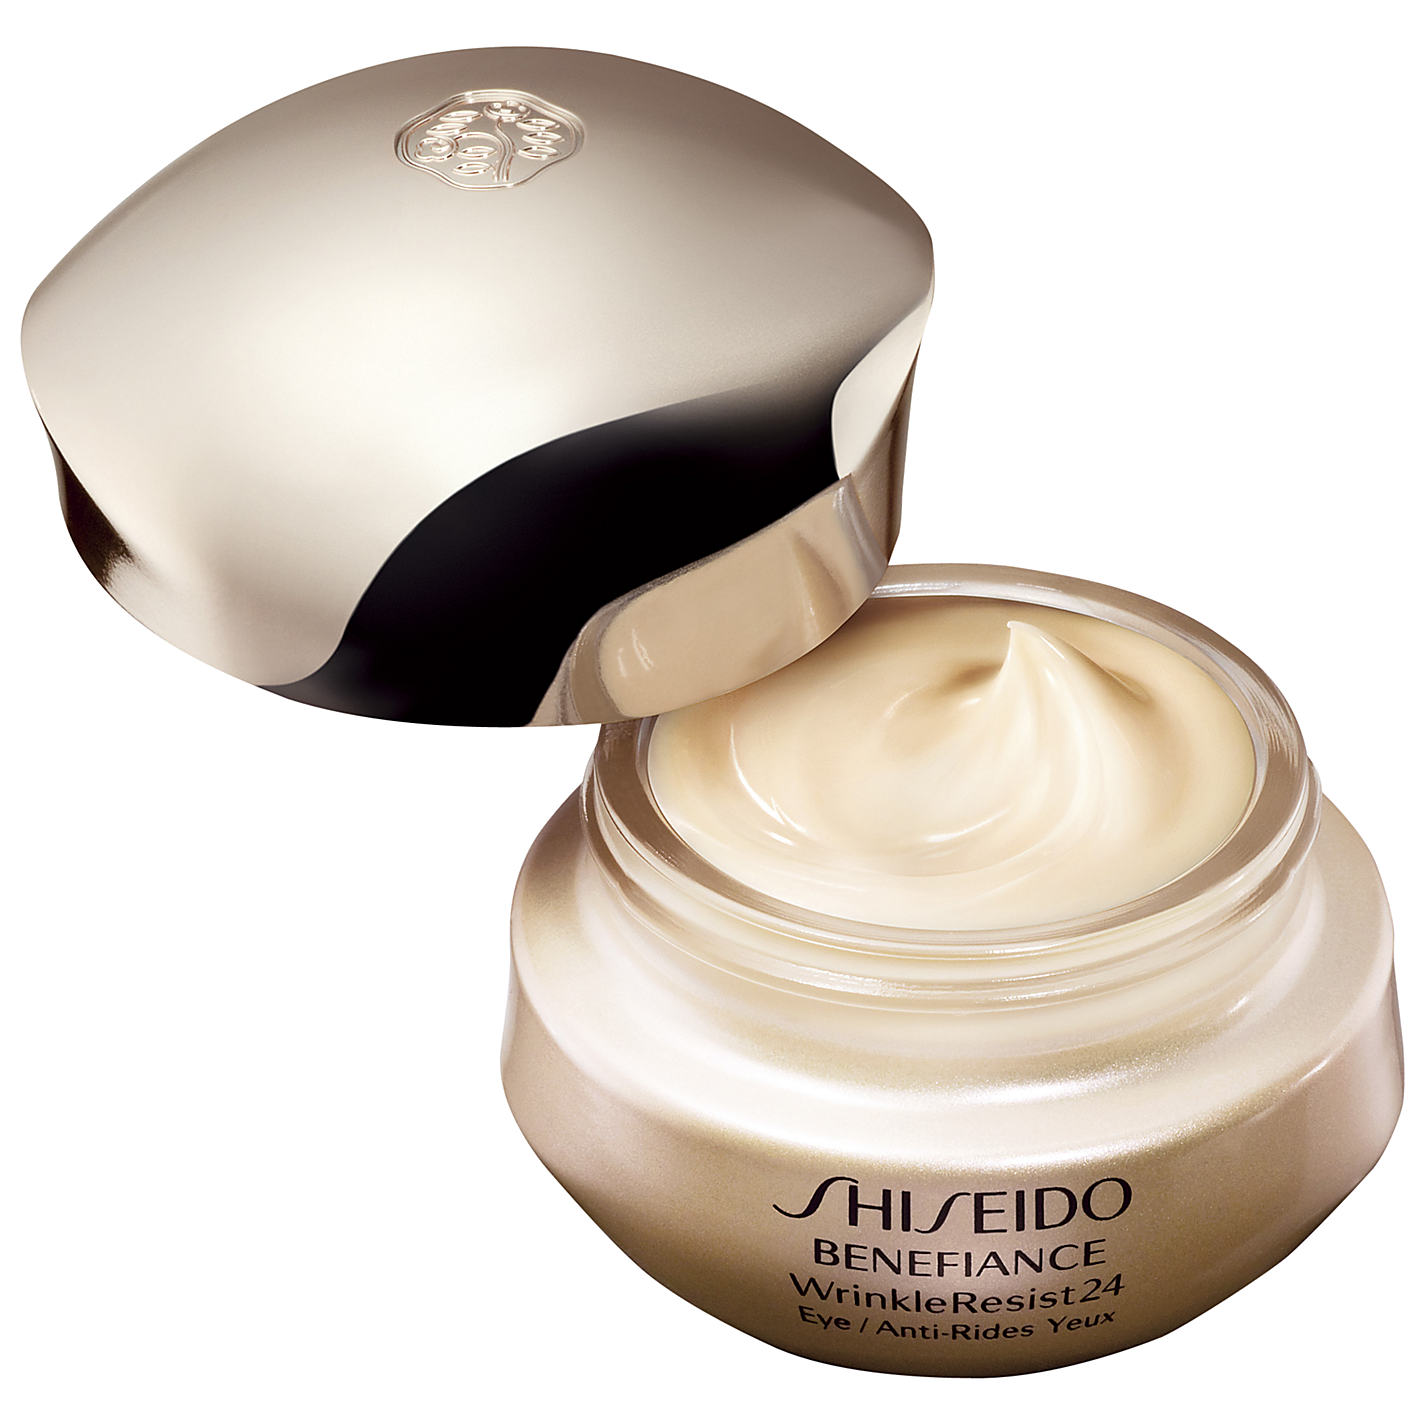 Shiseido Benefiance Wrinkleresist24 sẽ là giải pháp hữu dụng giúp bạn giữ gìn đôi mắt đẹp